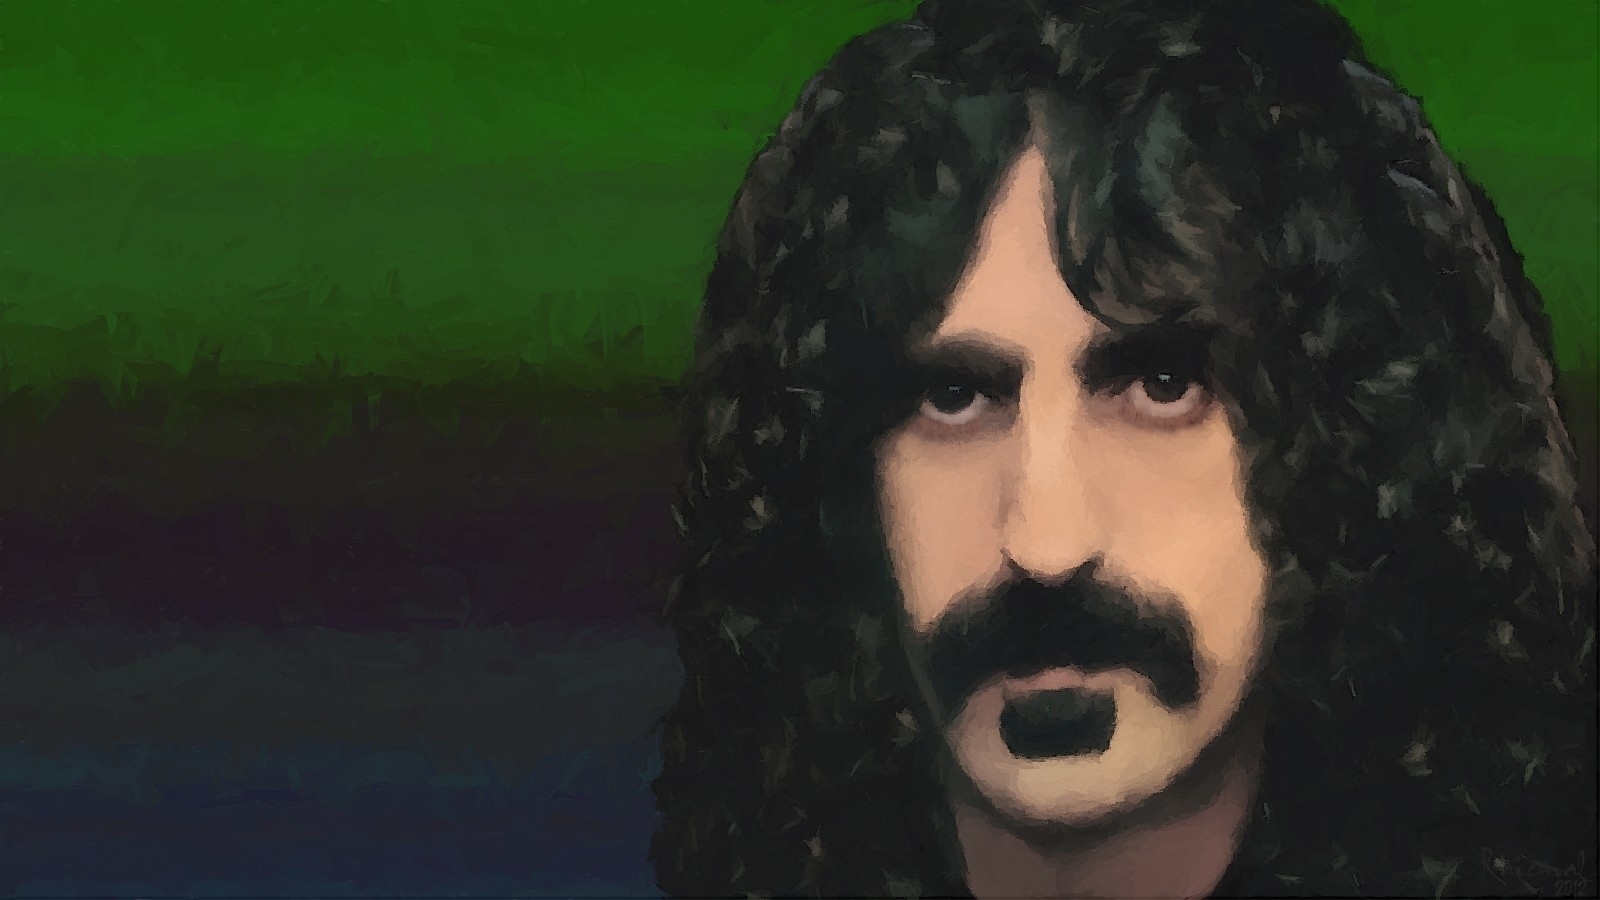 Frank Zappa by Ravenval 2012 by ravenval on